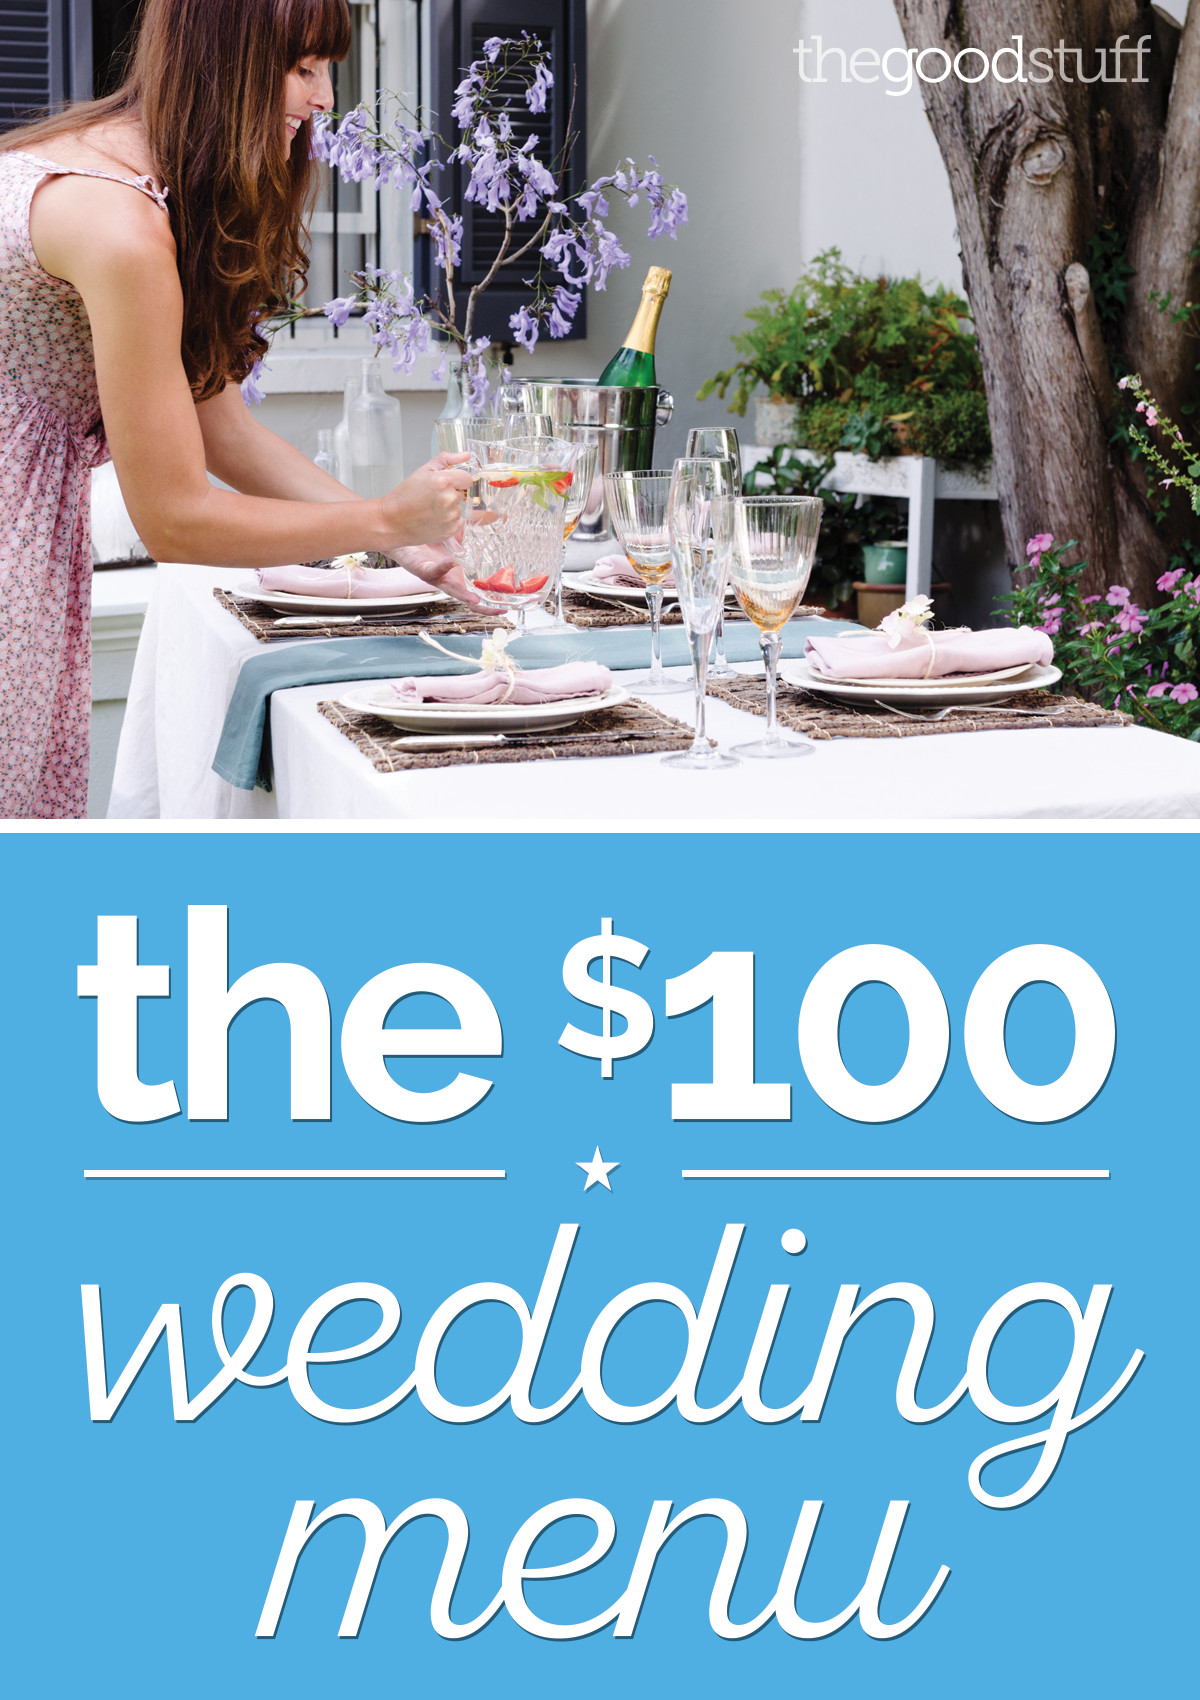 Wedding Buffet Menu Ideas DIY
 A DIY Wedding Menu for Just $100